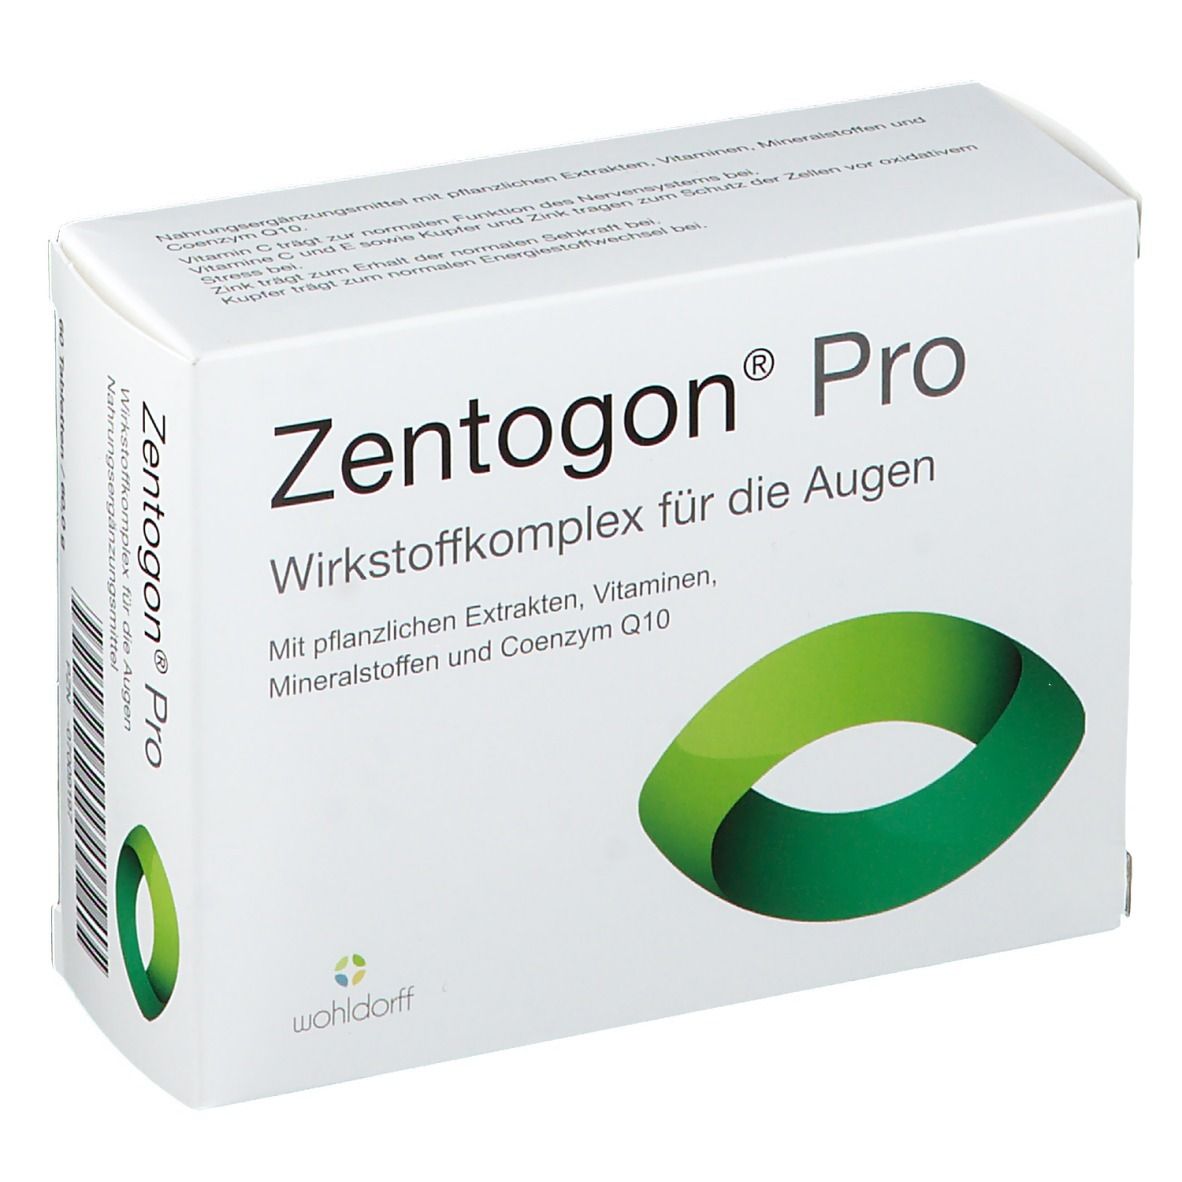 Zentogon® Pro